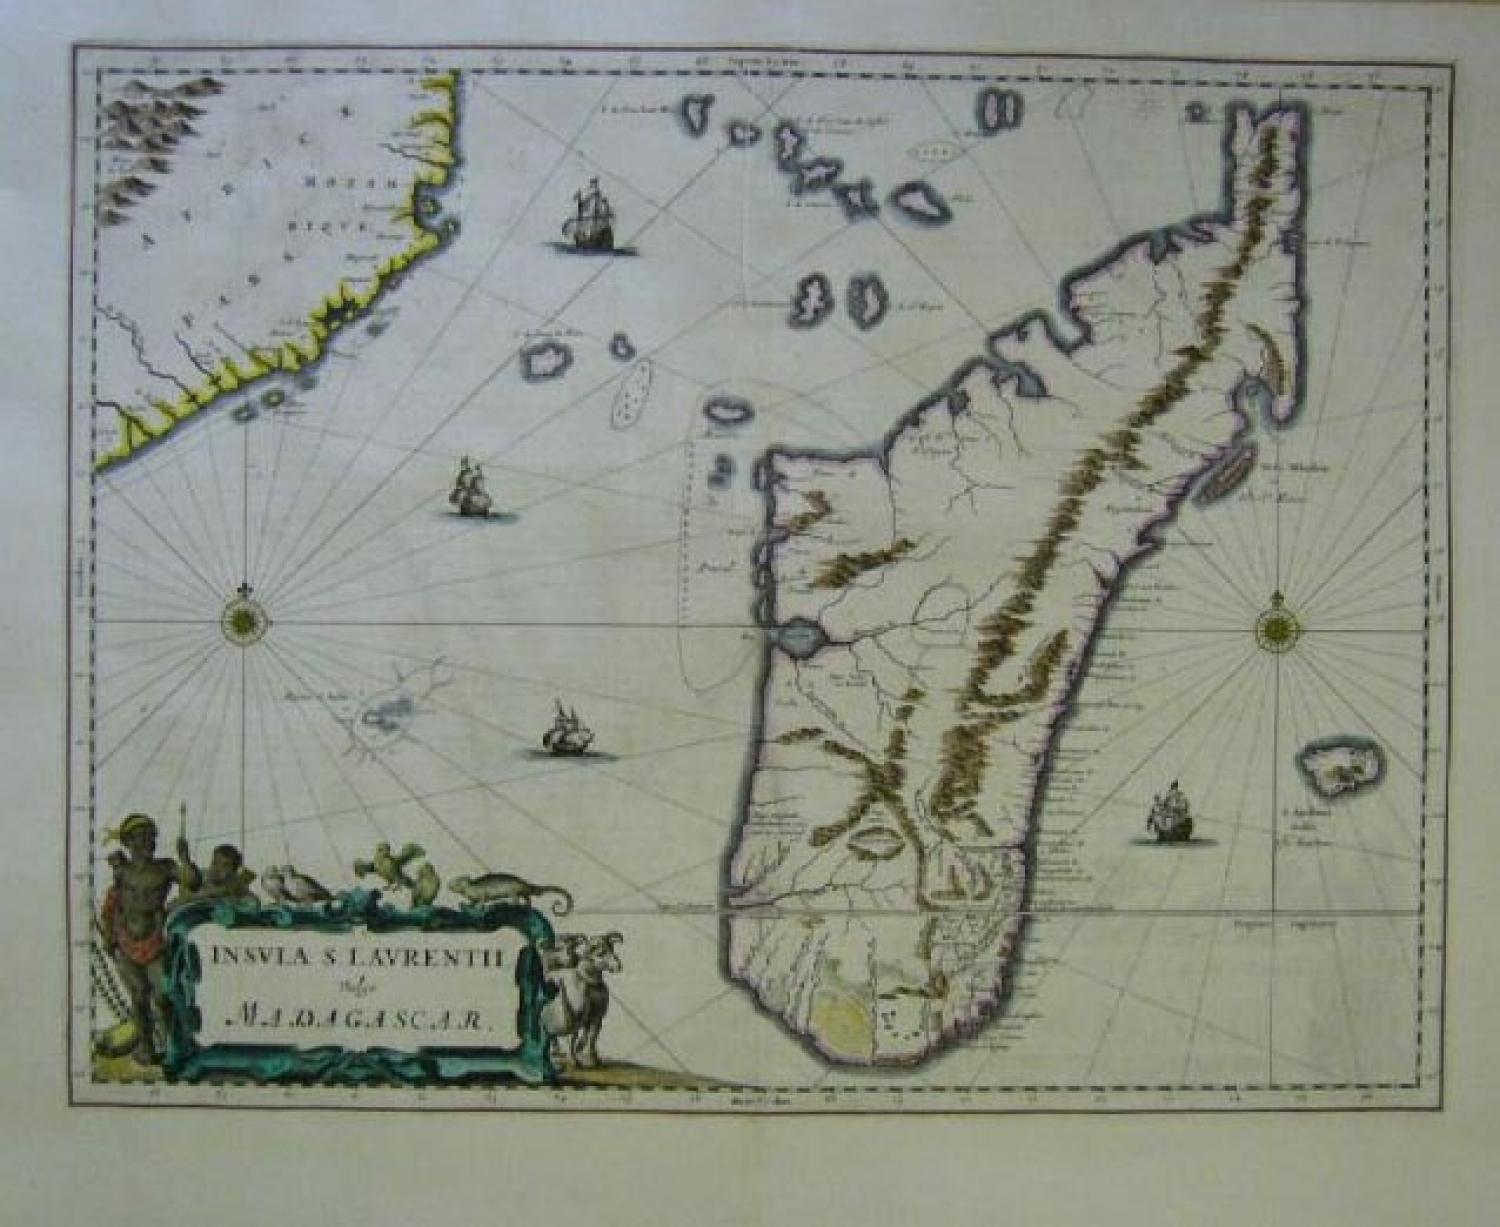 SOLD Insula S. Laurentii, vulgo Madagascar